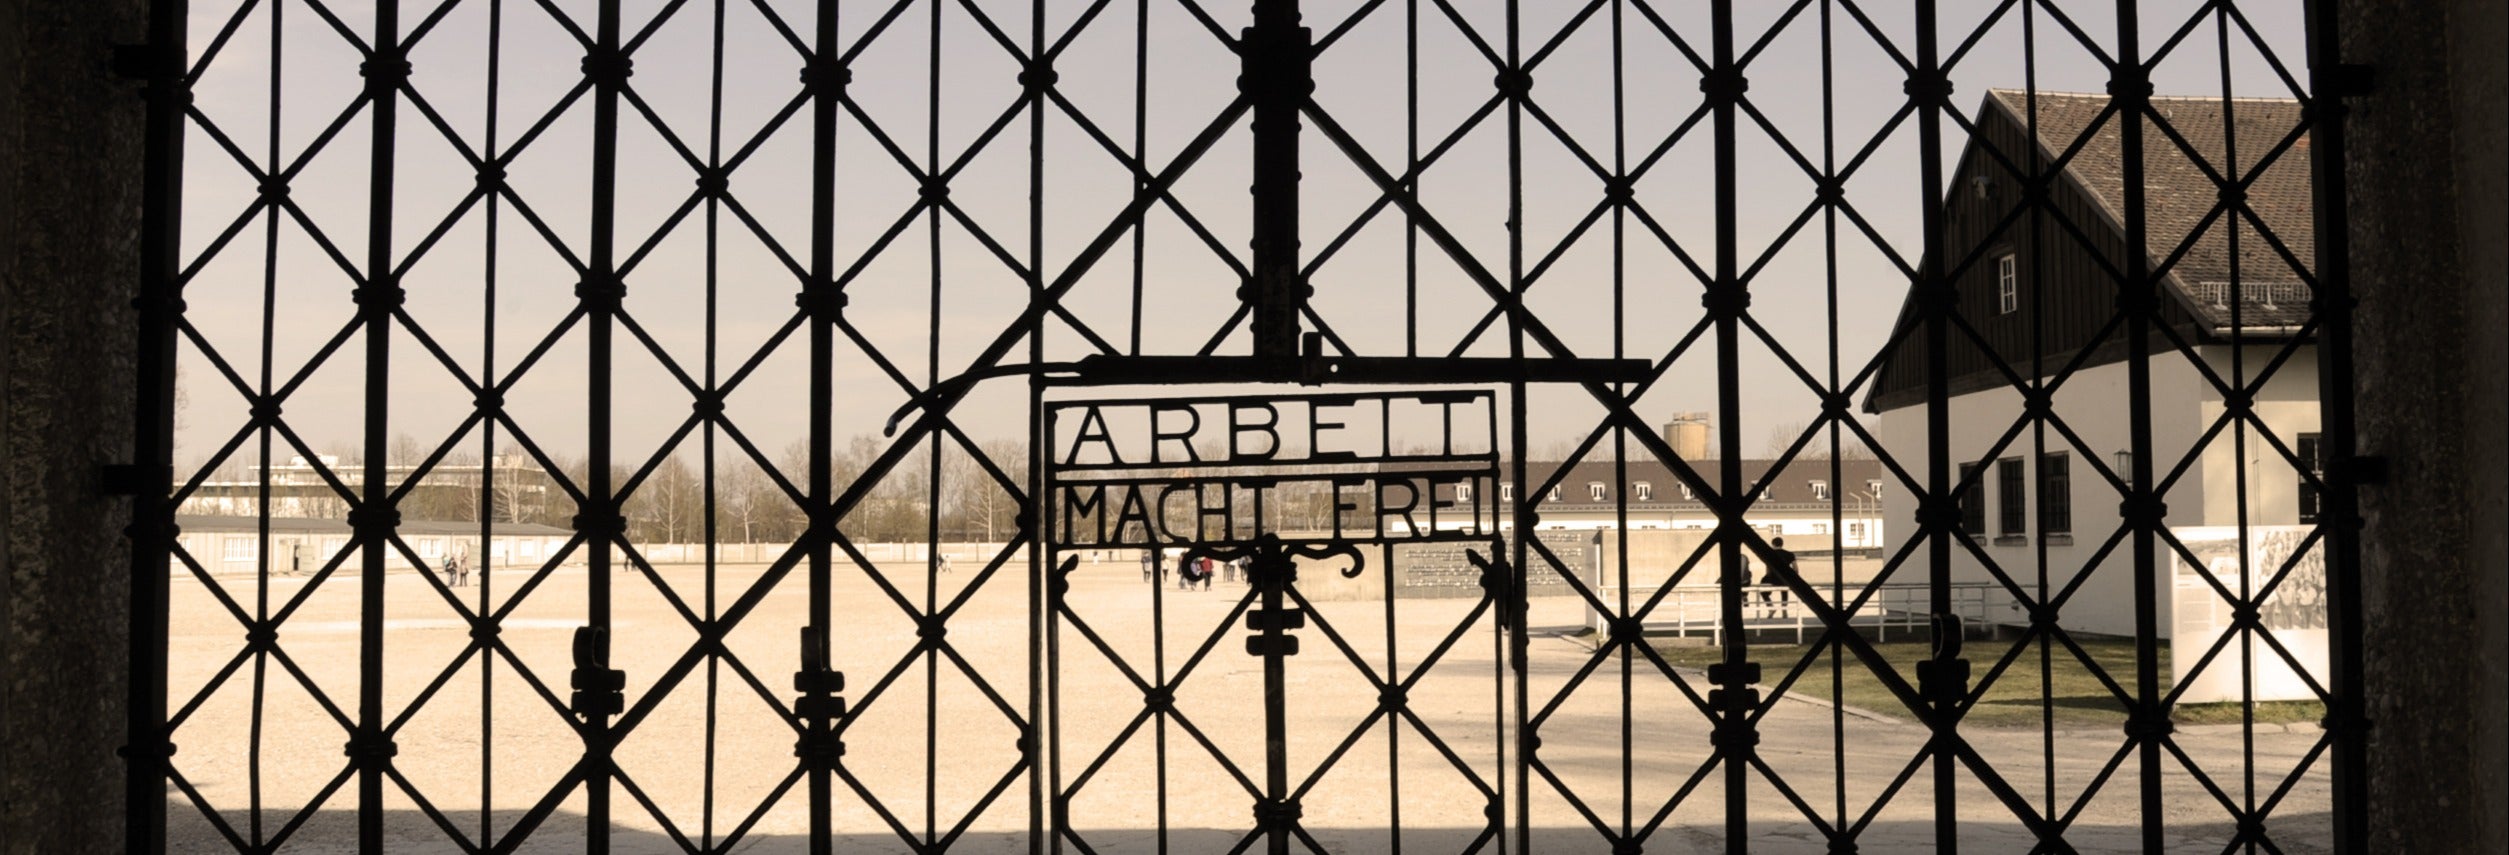 Tour do Terceiro Reich + Campo de concentração de Dachau